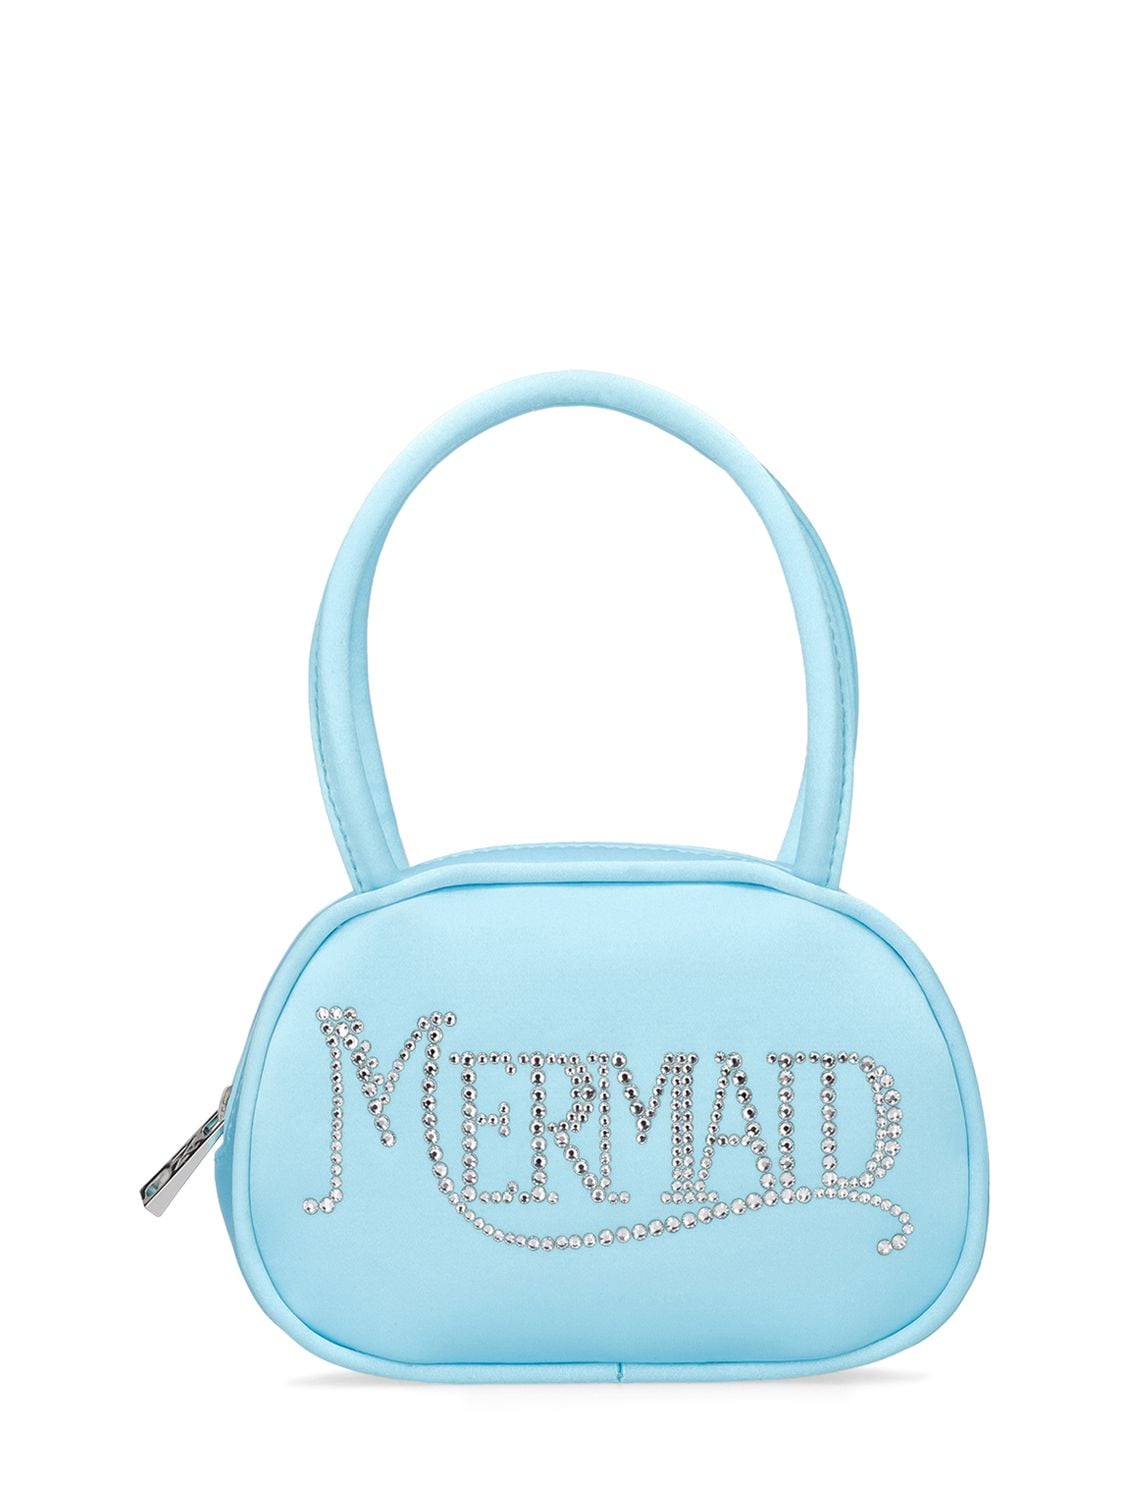 Superamini Mermaid Satin Top Handle Bag